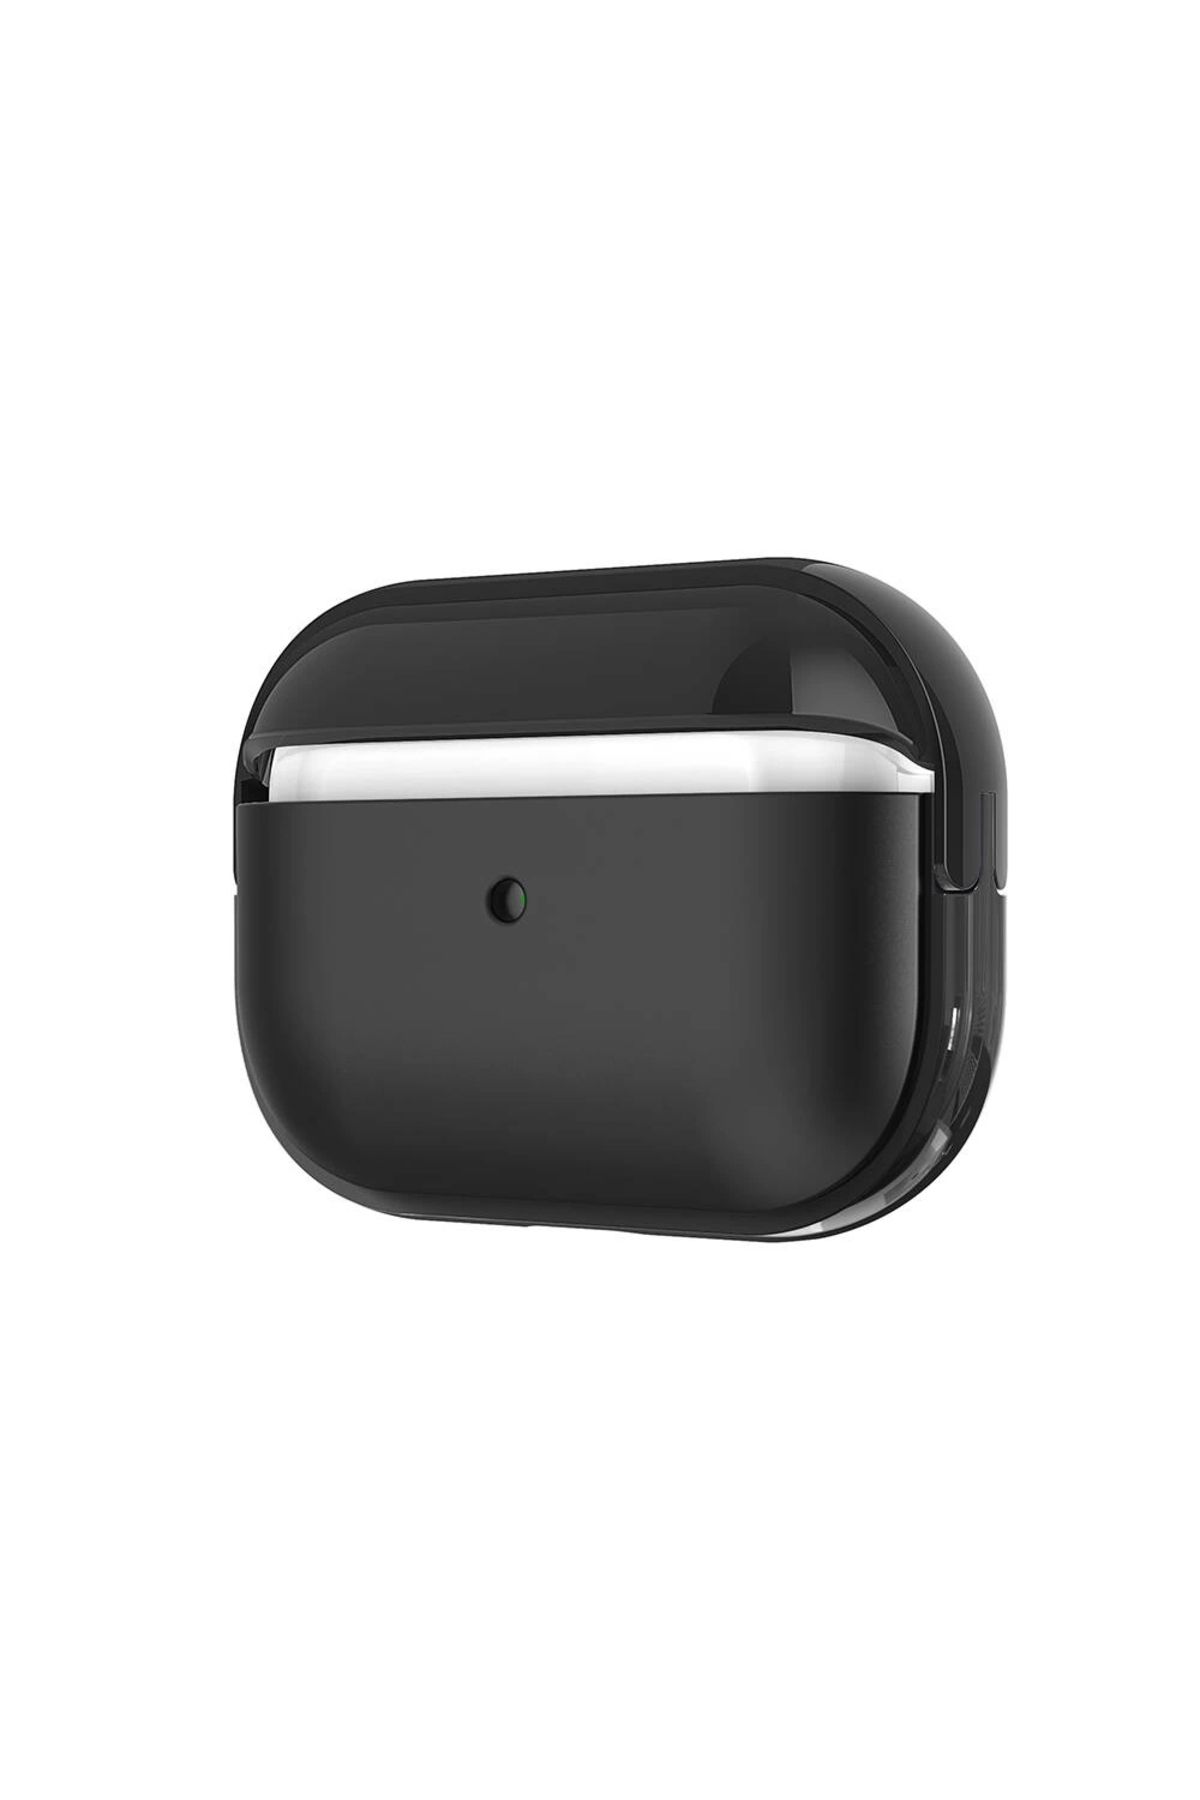 Lopard Apple Airpods Pro 2 Uyumlu Airbag 36 Darbelere Karşı Dayanıklı Kılıf